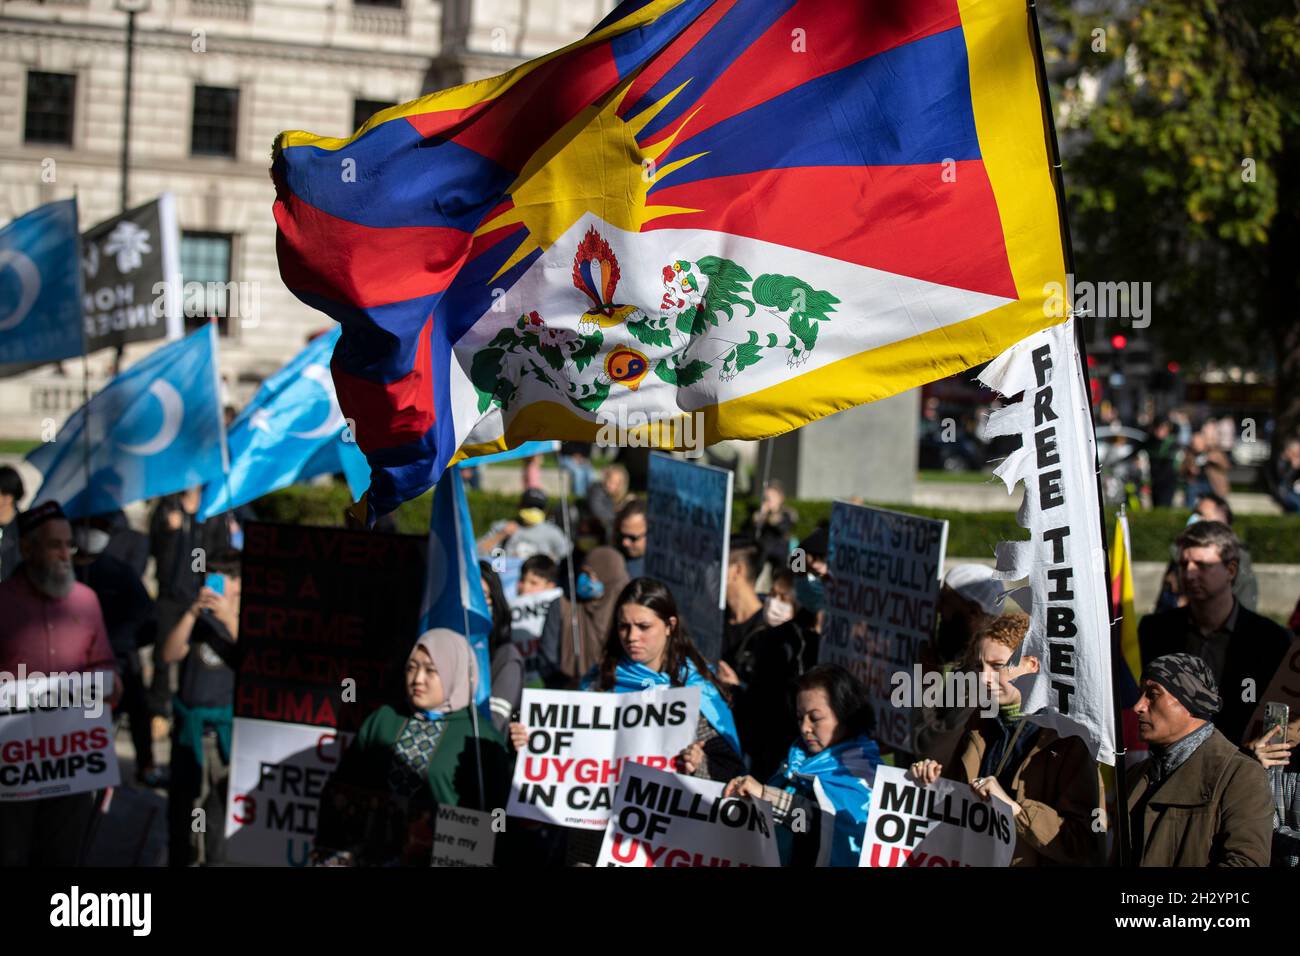 Londra, Regno Unito. 24 ottobre 2021. I manifestanti detengono bandiere e cartelli che esprimono le loro opinioni durante la manifestazione.Un raduno organizzato da sei diversi gruppi di diritti umani di Uyghur, Tibet e Hong Kong che chiedono “dire no alle Olimpiadi invernali di Pechino, dire no al genocidio”, che si è collegato a tre obiettivi fondamentali: "Protesta contro le Olimpiadi invernali di Pechino del 2022", "Uyghurs, tibetani e popolo di Hong Kong" e "consegnare una torcia relè per interpretare lo spirito olimpico". Credit: SOPA Images Limited/Alamy Live News Foto Stock